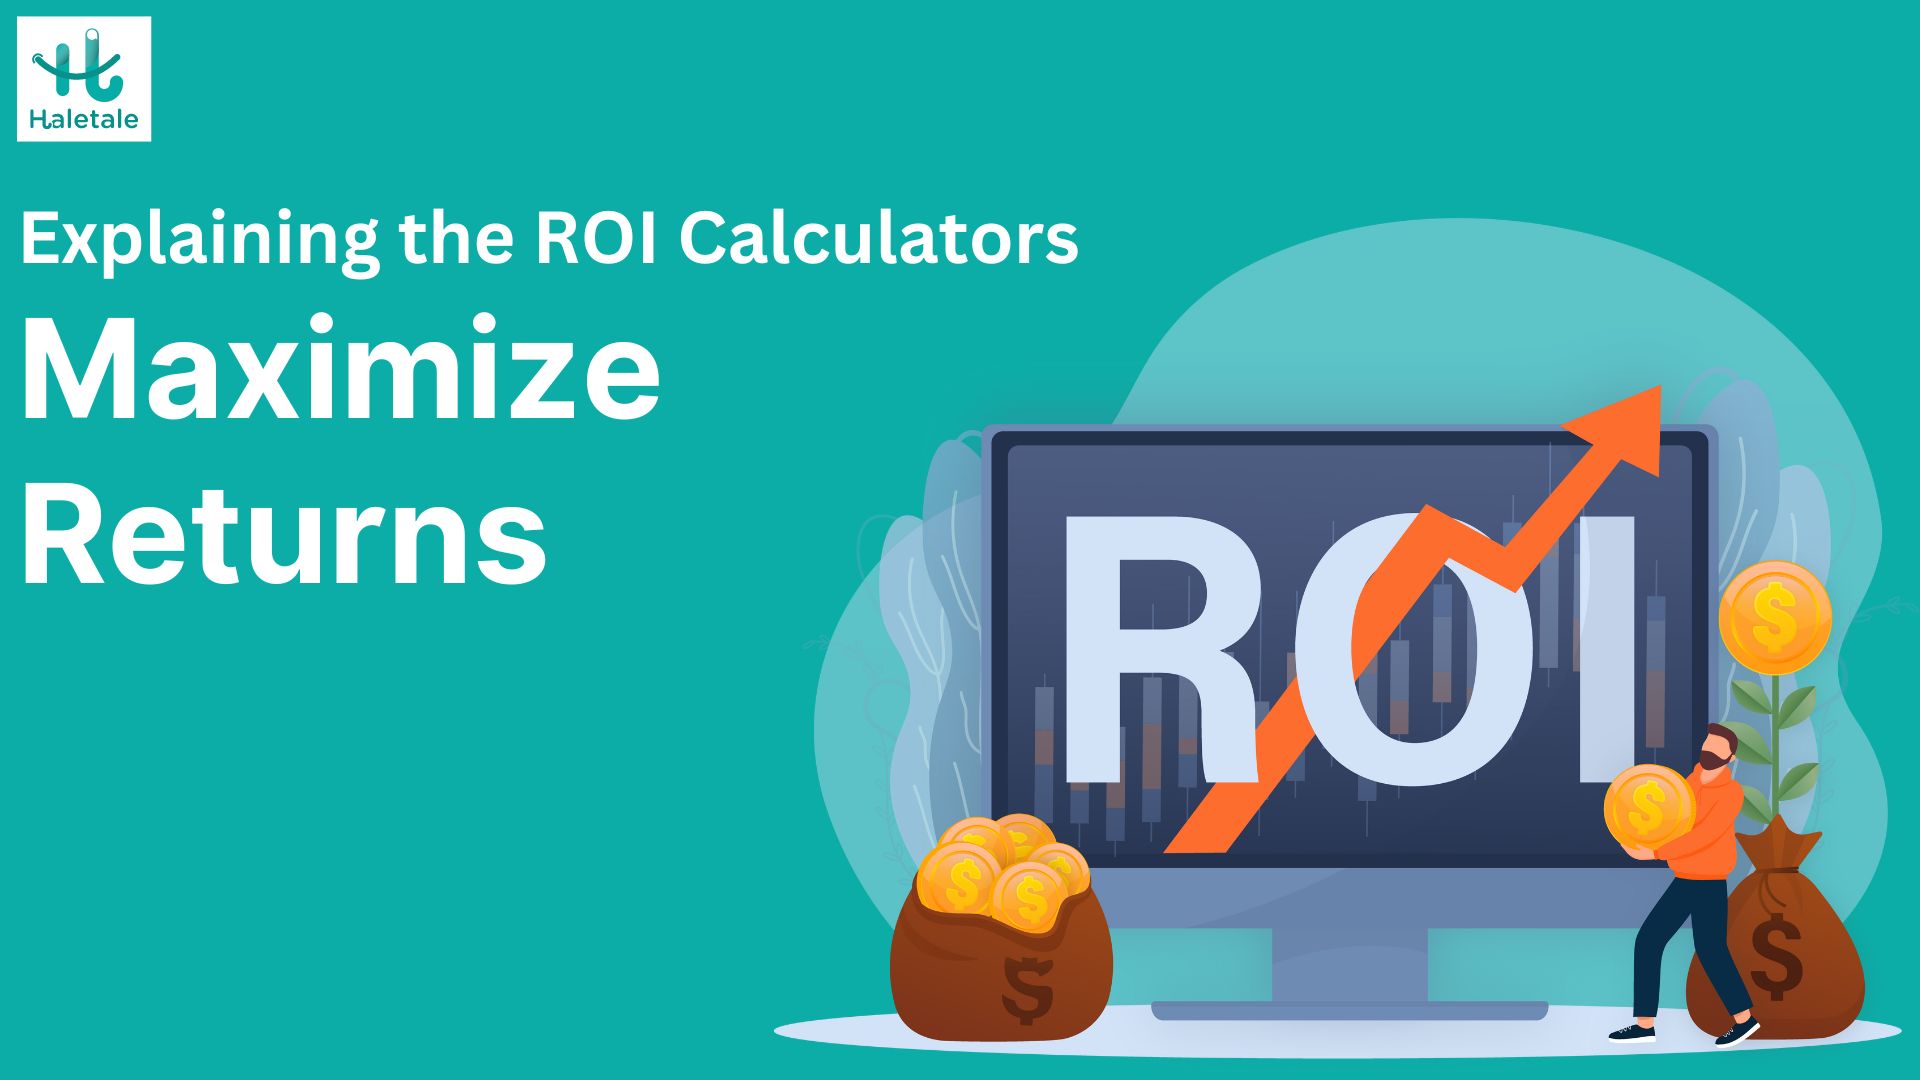 ROI Calculators